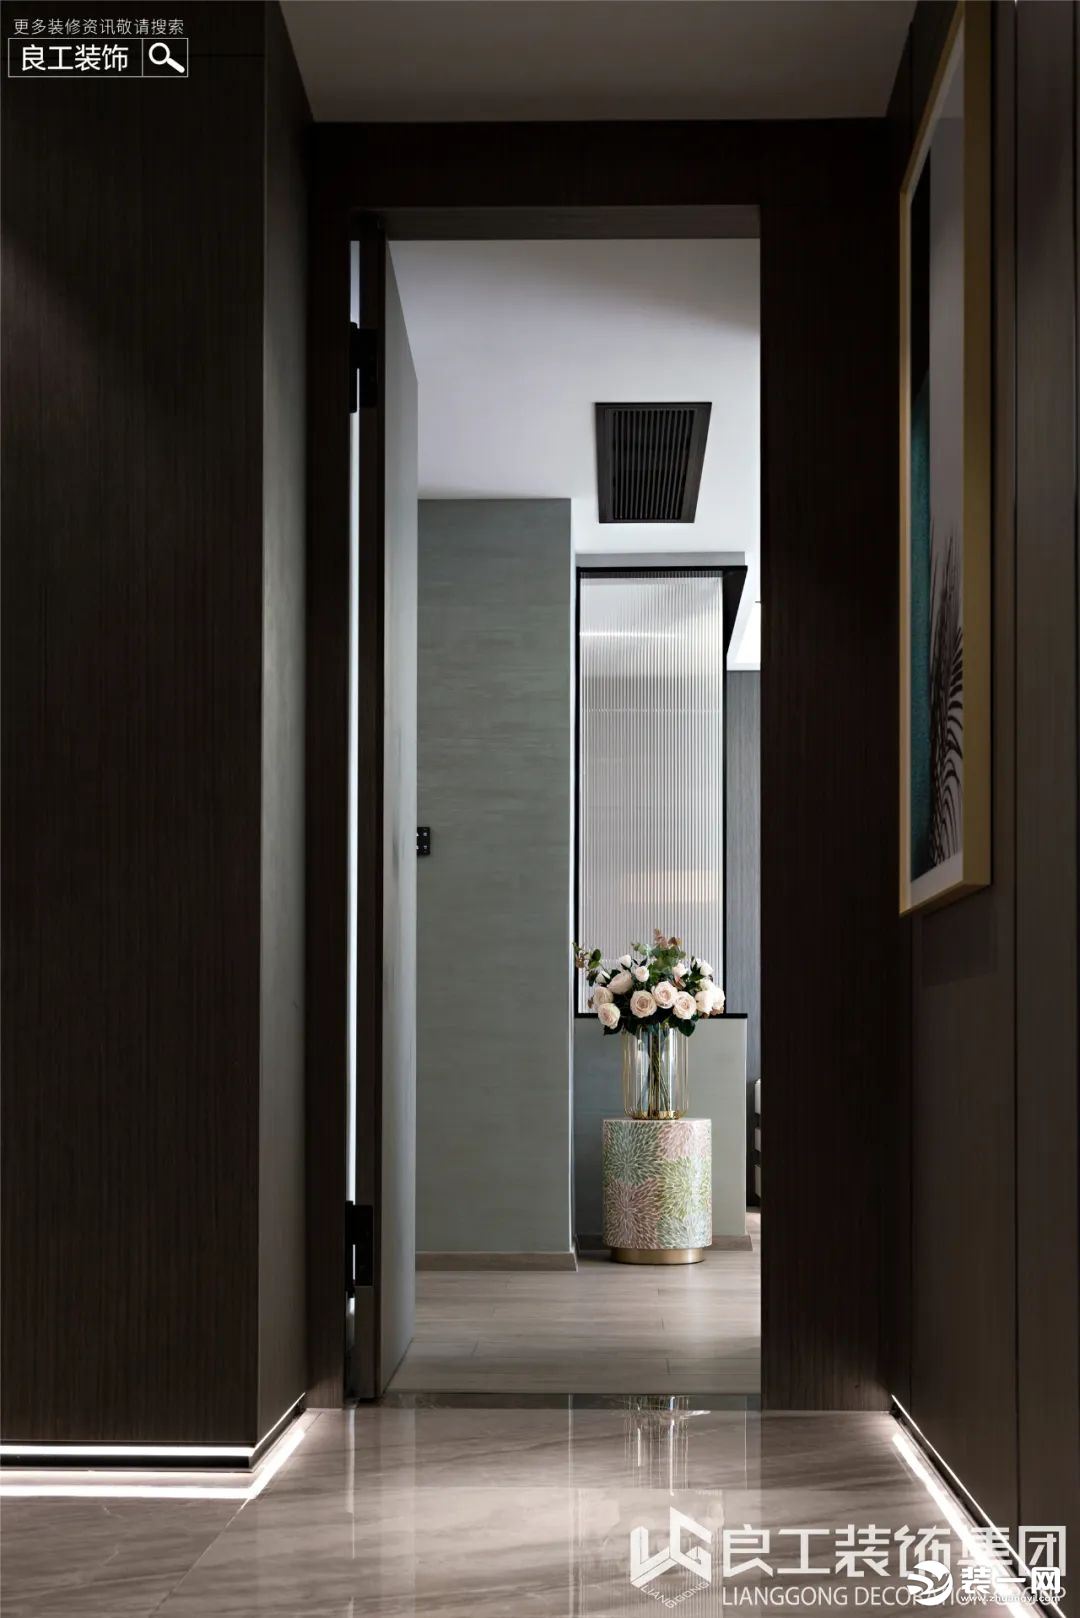 走廊大面积选用玄关同款的木饰面拼贴，房间的门也是选用了木饰面隐形门，保持了空间的整体性，还显得大气